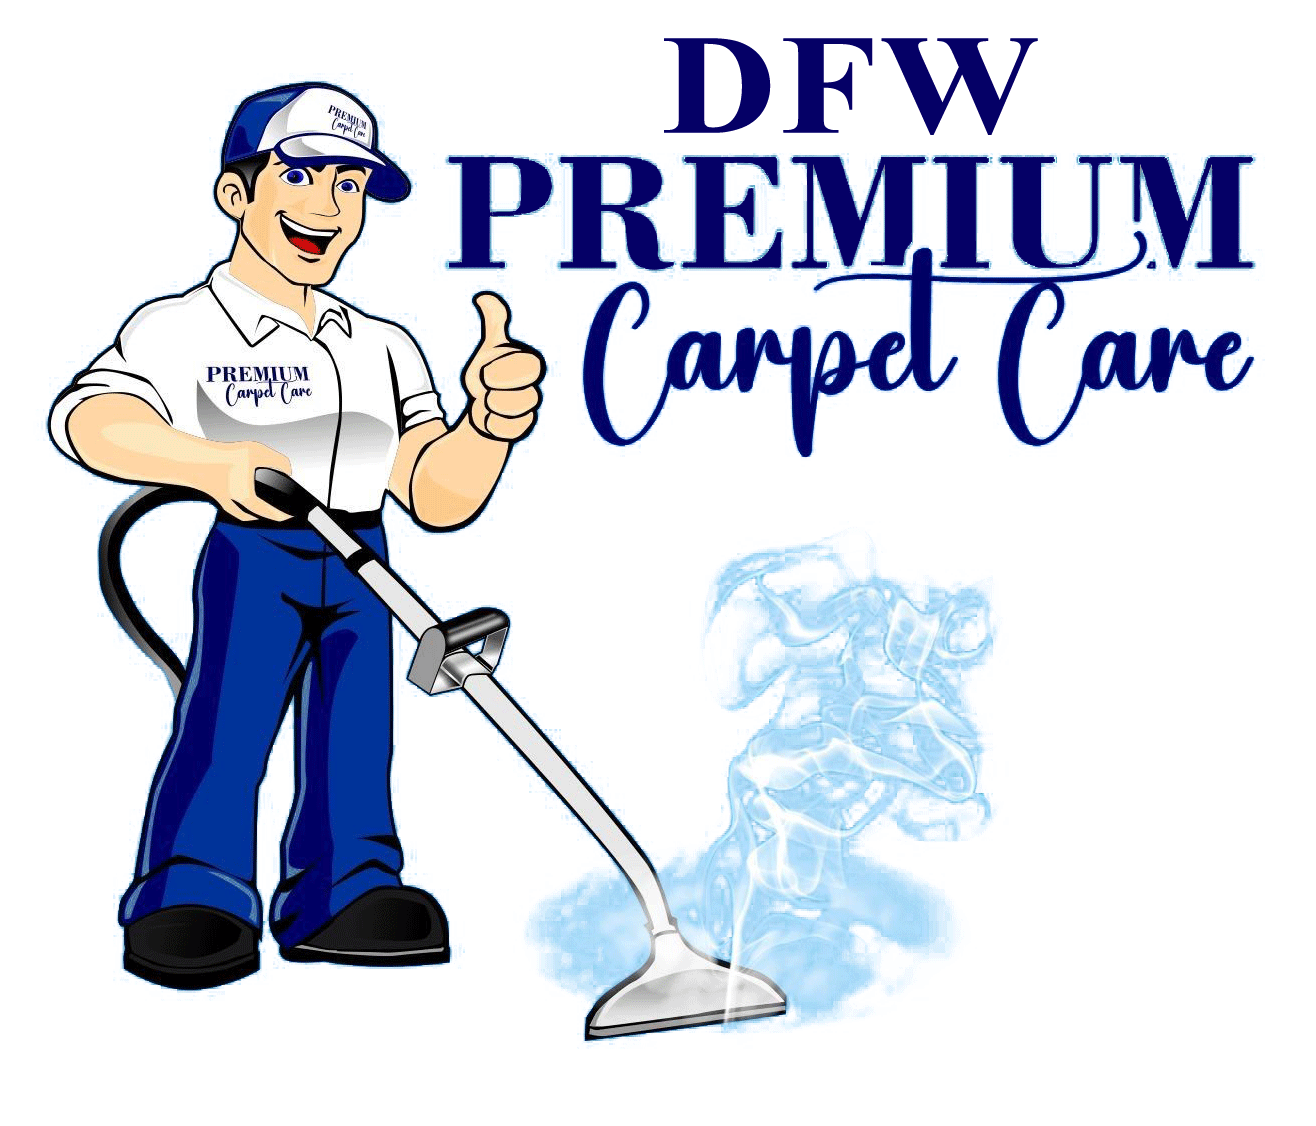 Premium Carpet Care